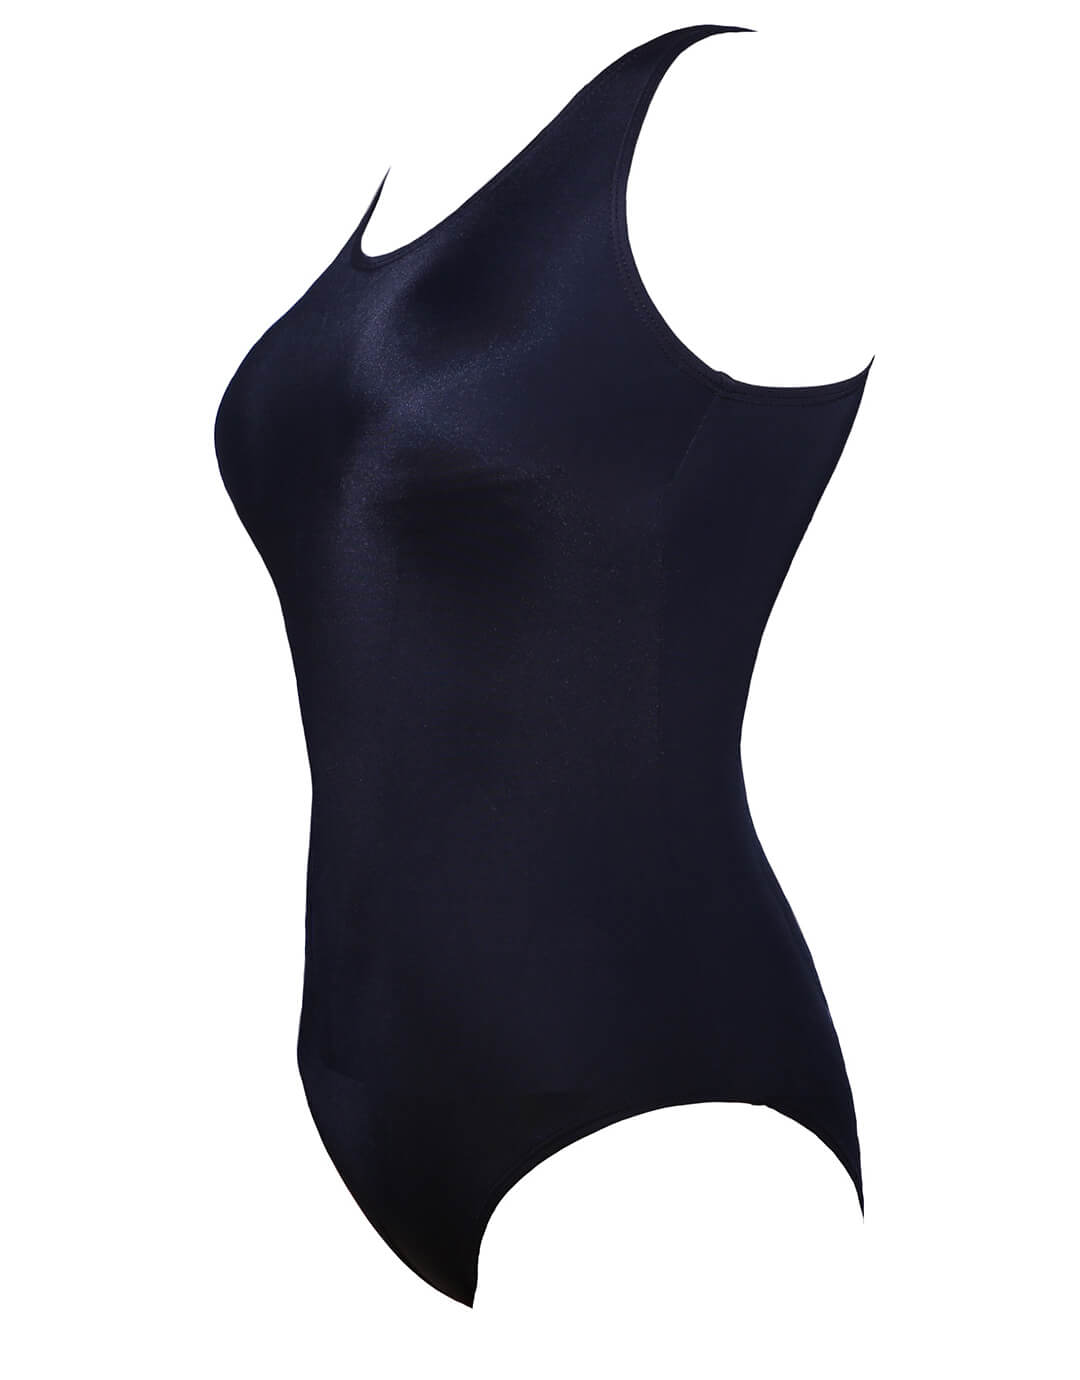 Jane Longer Length Swimsuit - Black